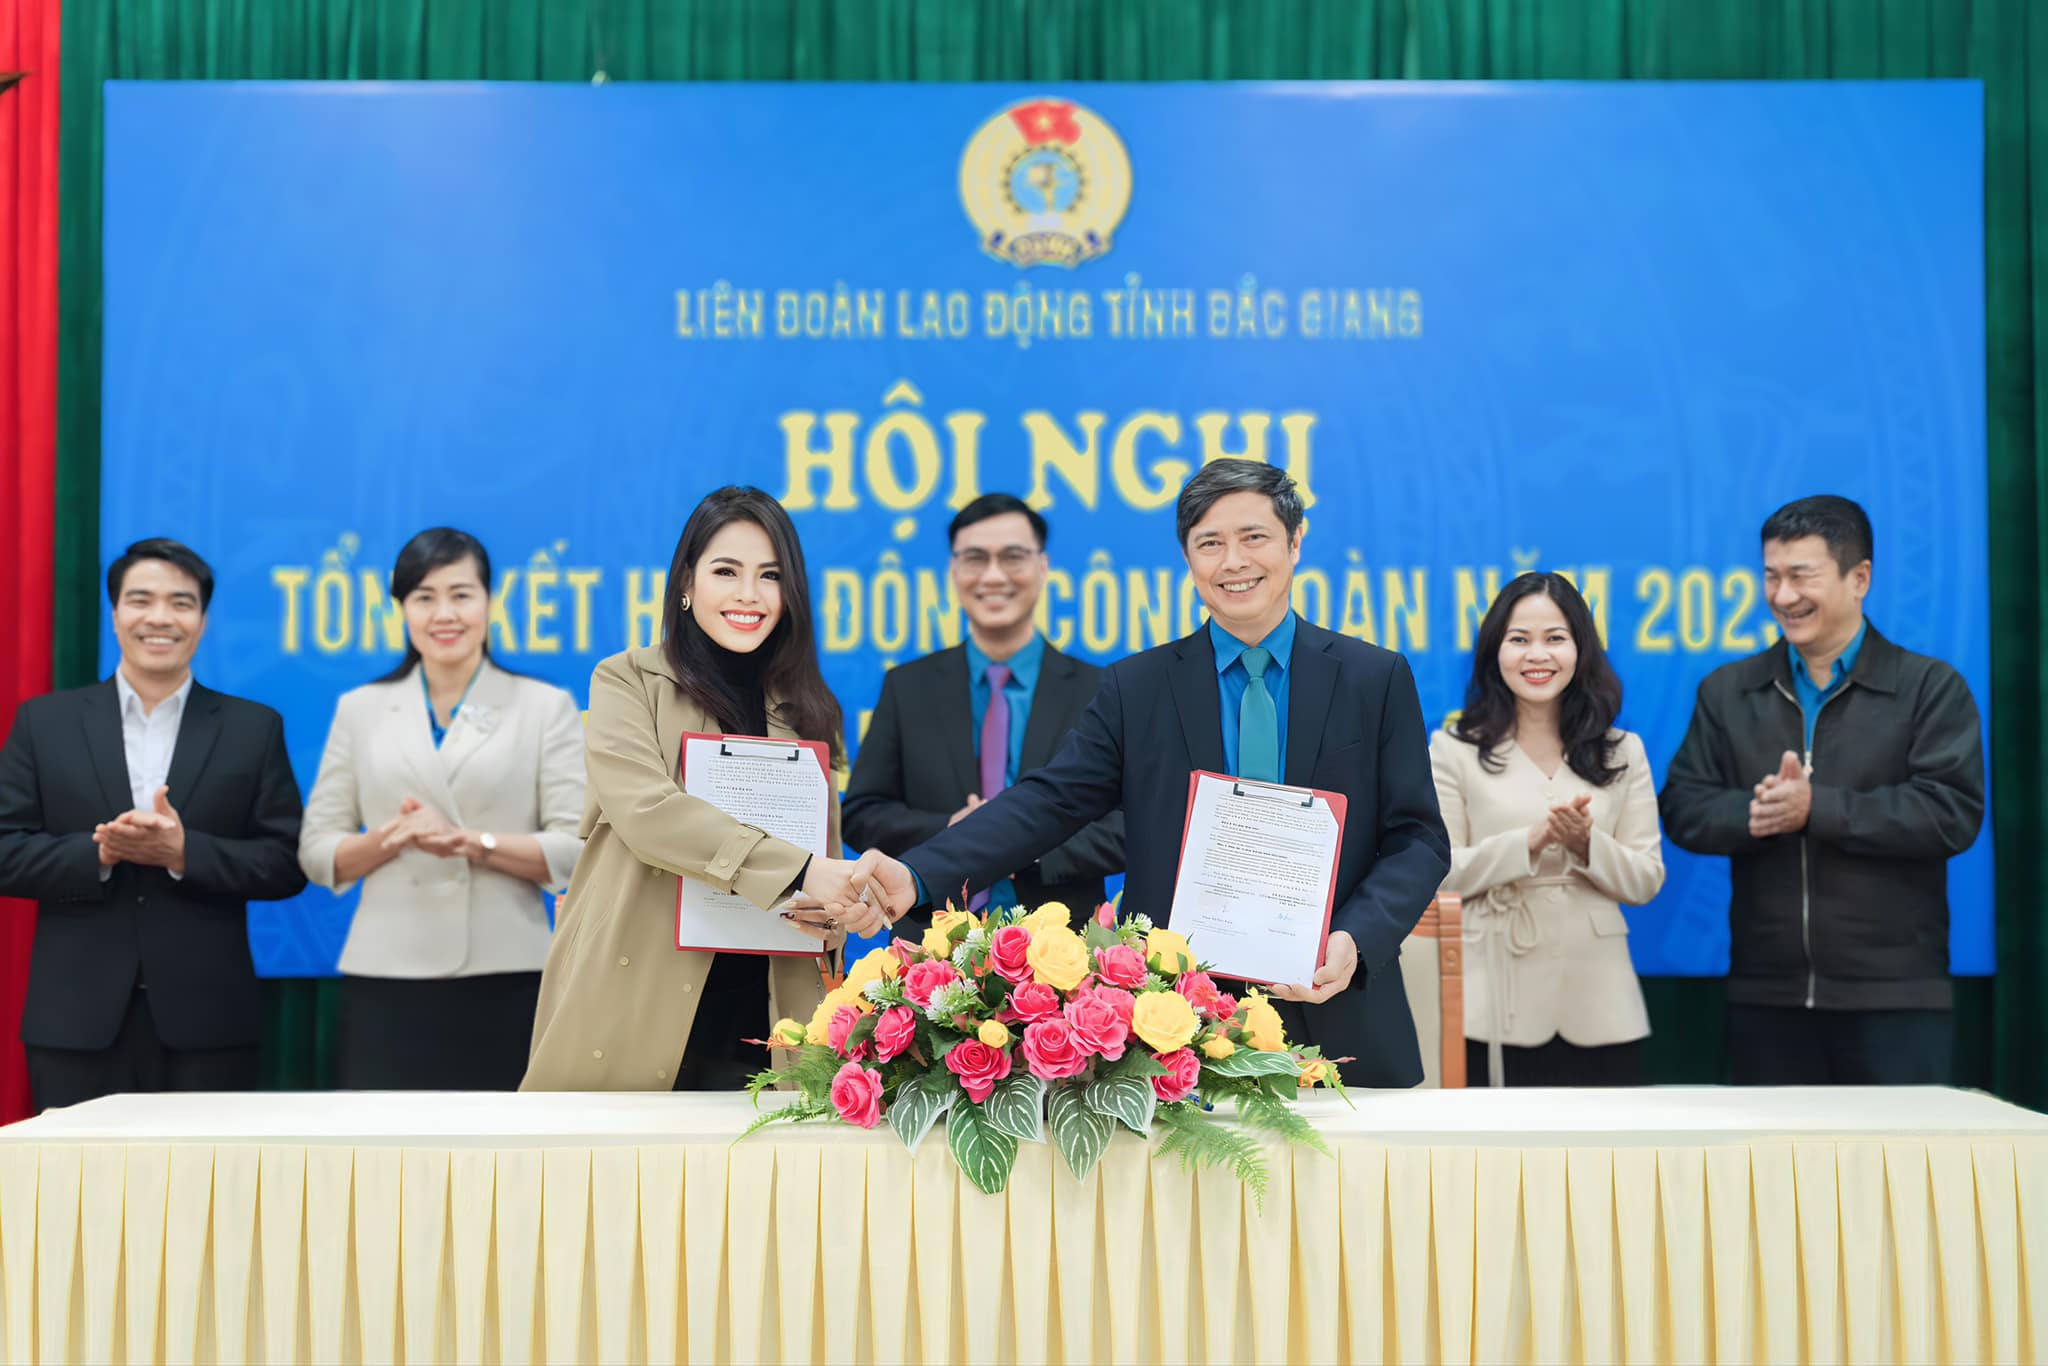 HCN HOLDINGS - HOGI GROUP: Đối Tác Chiến Lược Của Liên Đoàn Lao Động Tỉnh Bắc Giang